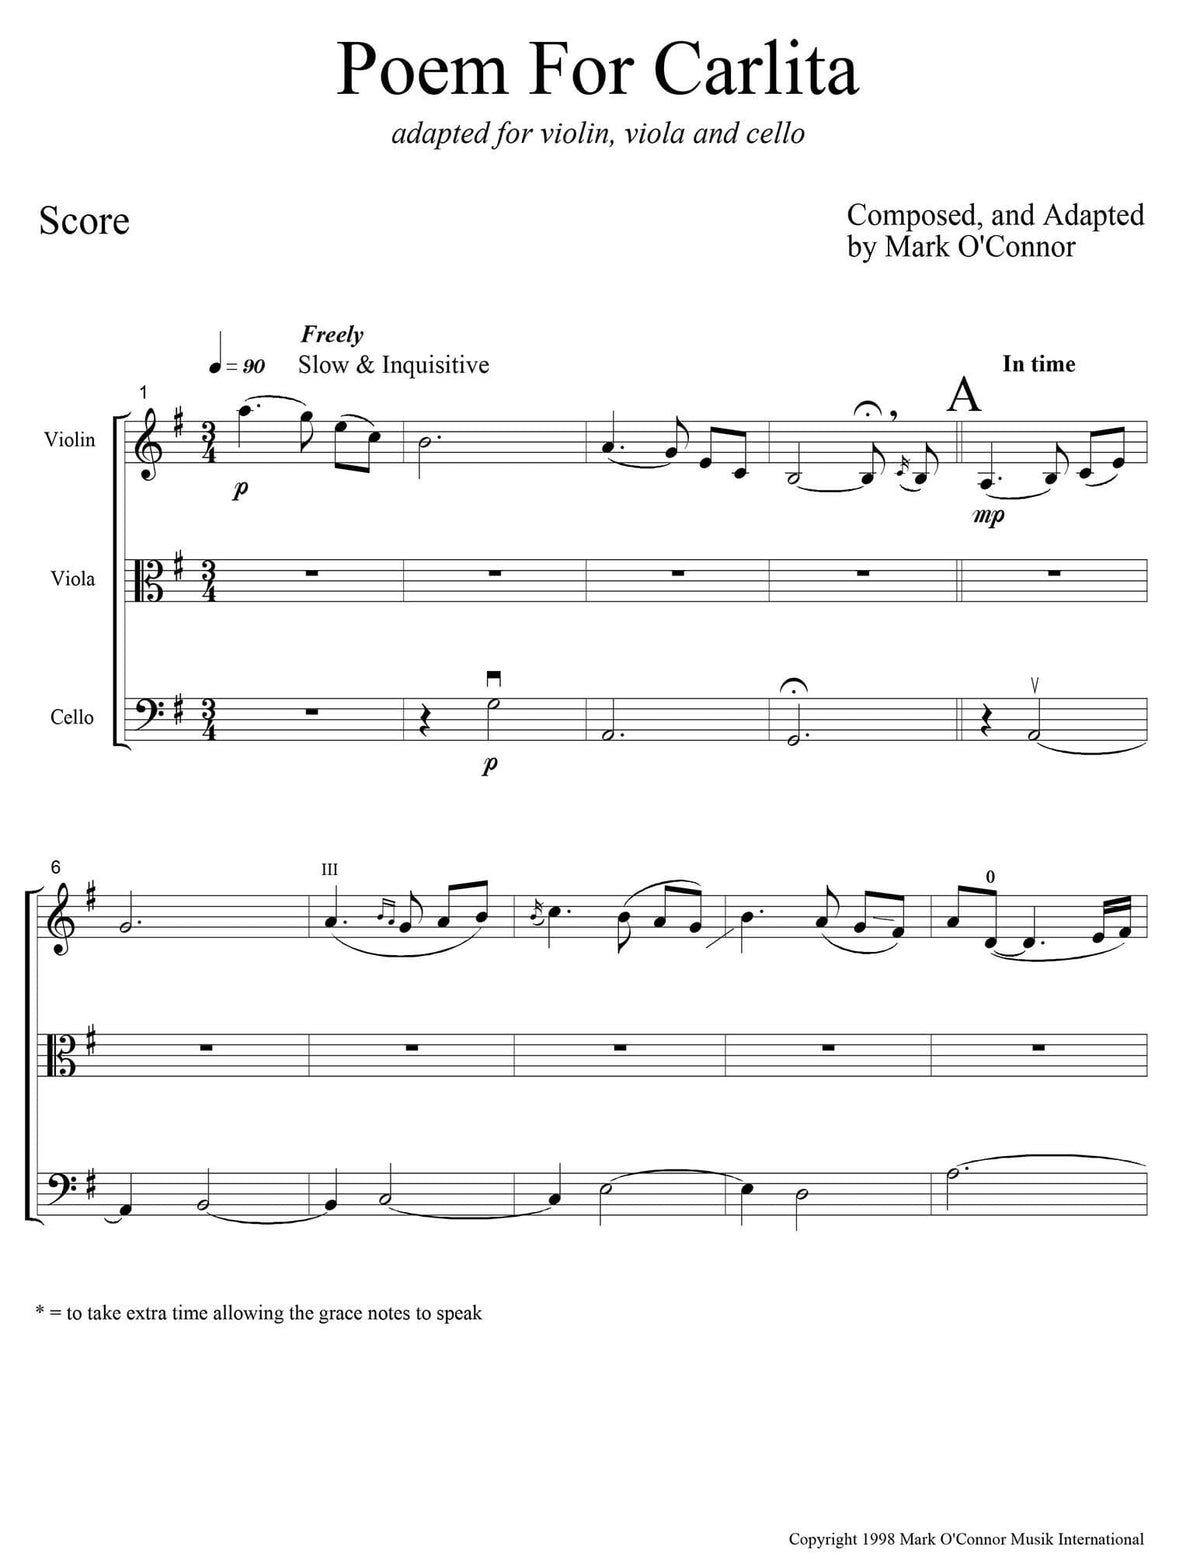 O'Connor, Mark - Poem for Carlita for Violin, Viola, and Cello - Score - Digital Download